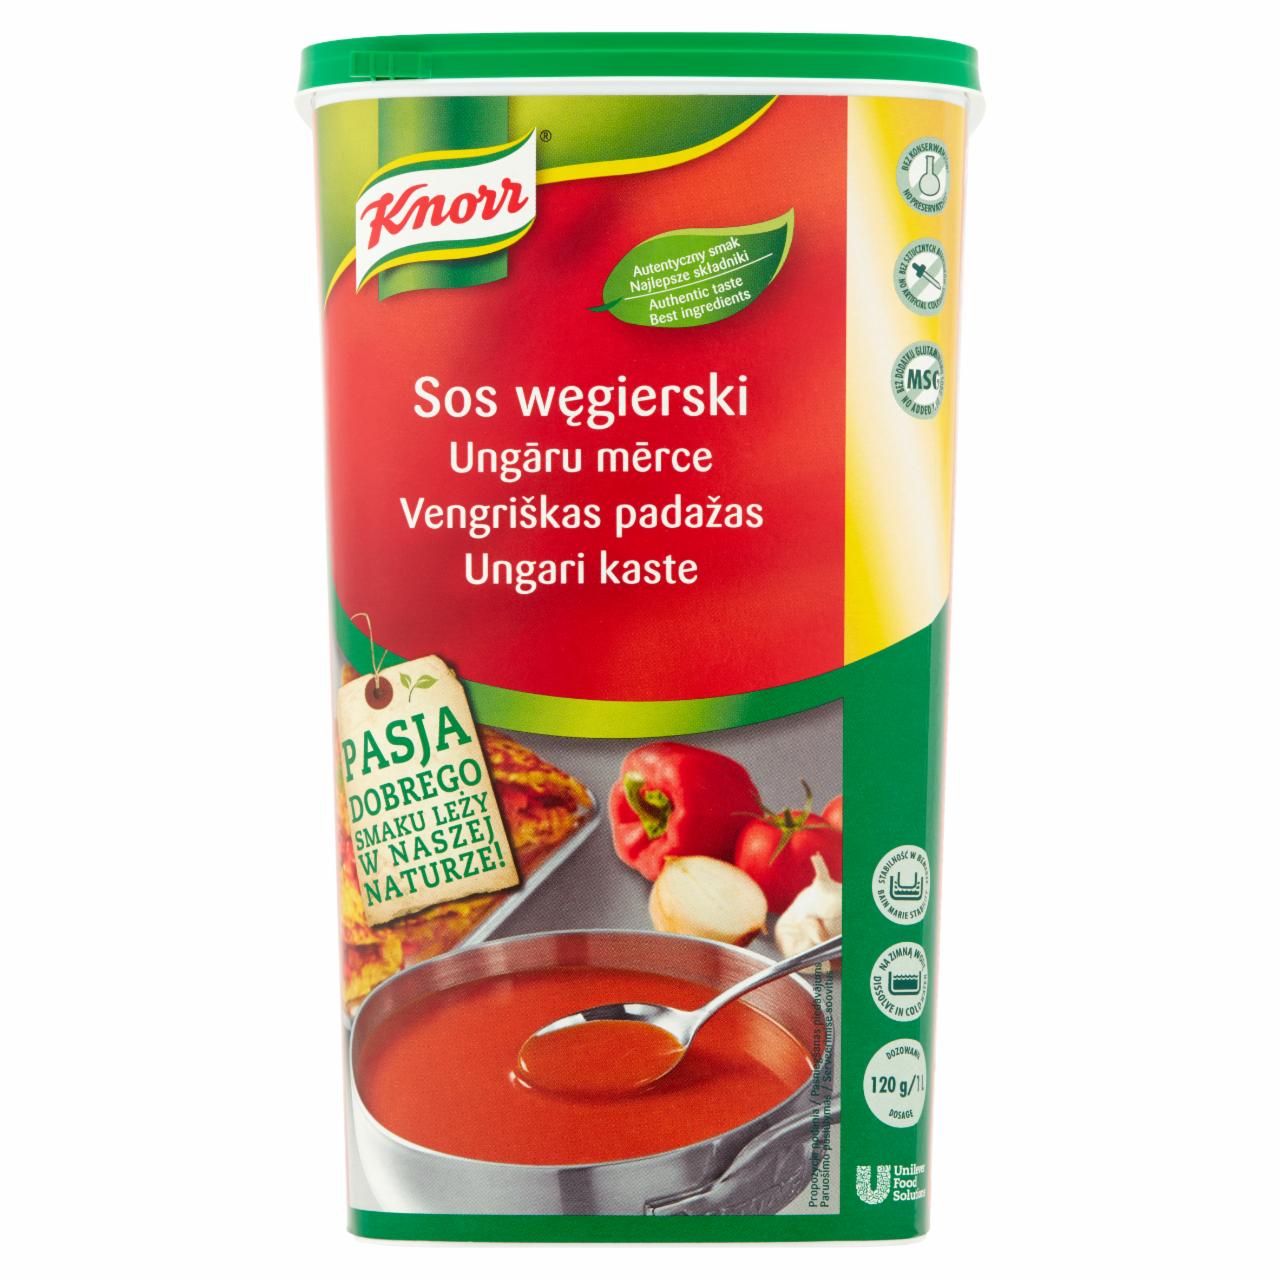 Zdjęcia - Knorr Sos węgierski 1,2 kg